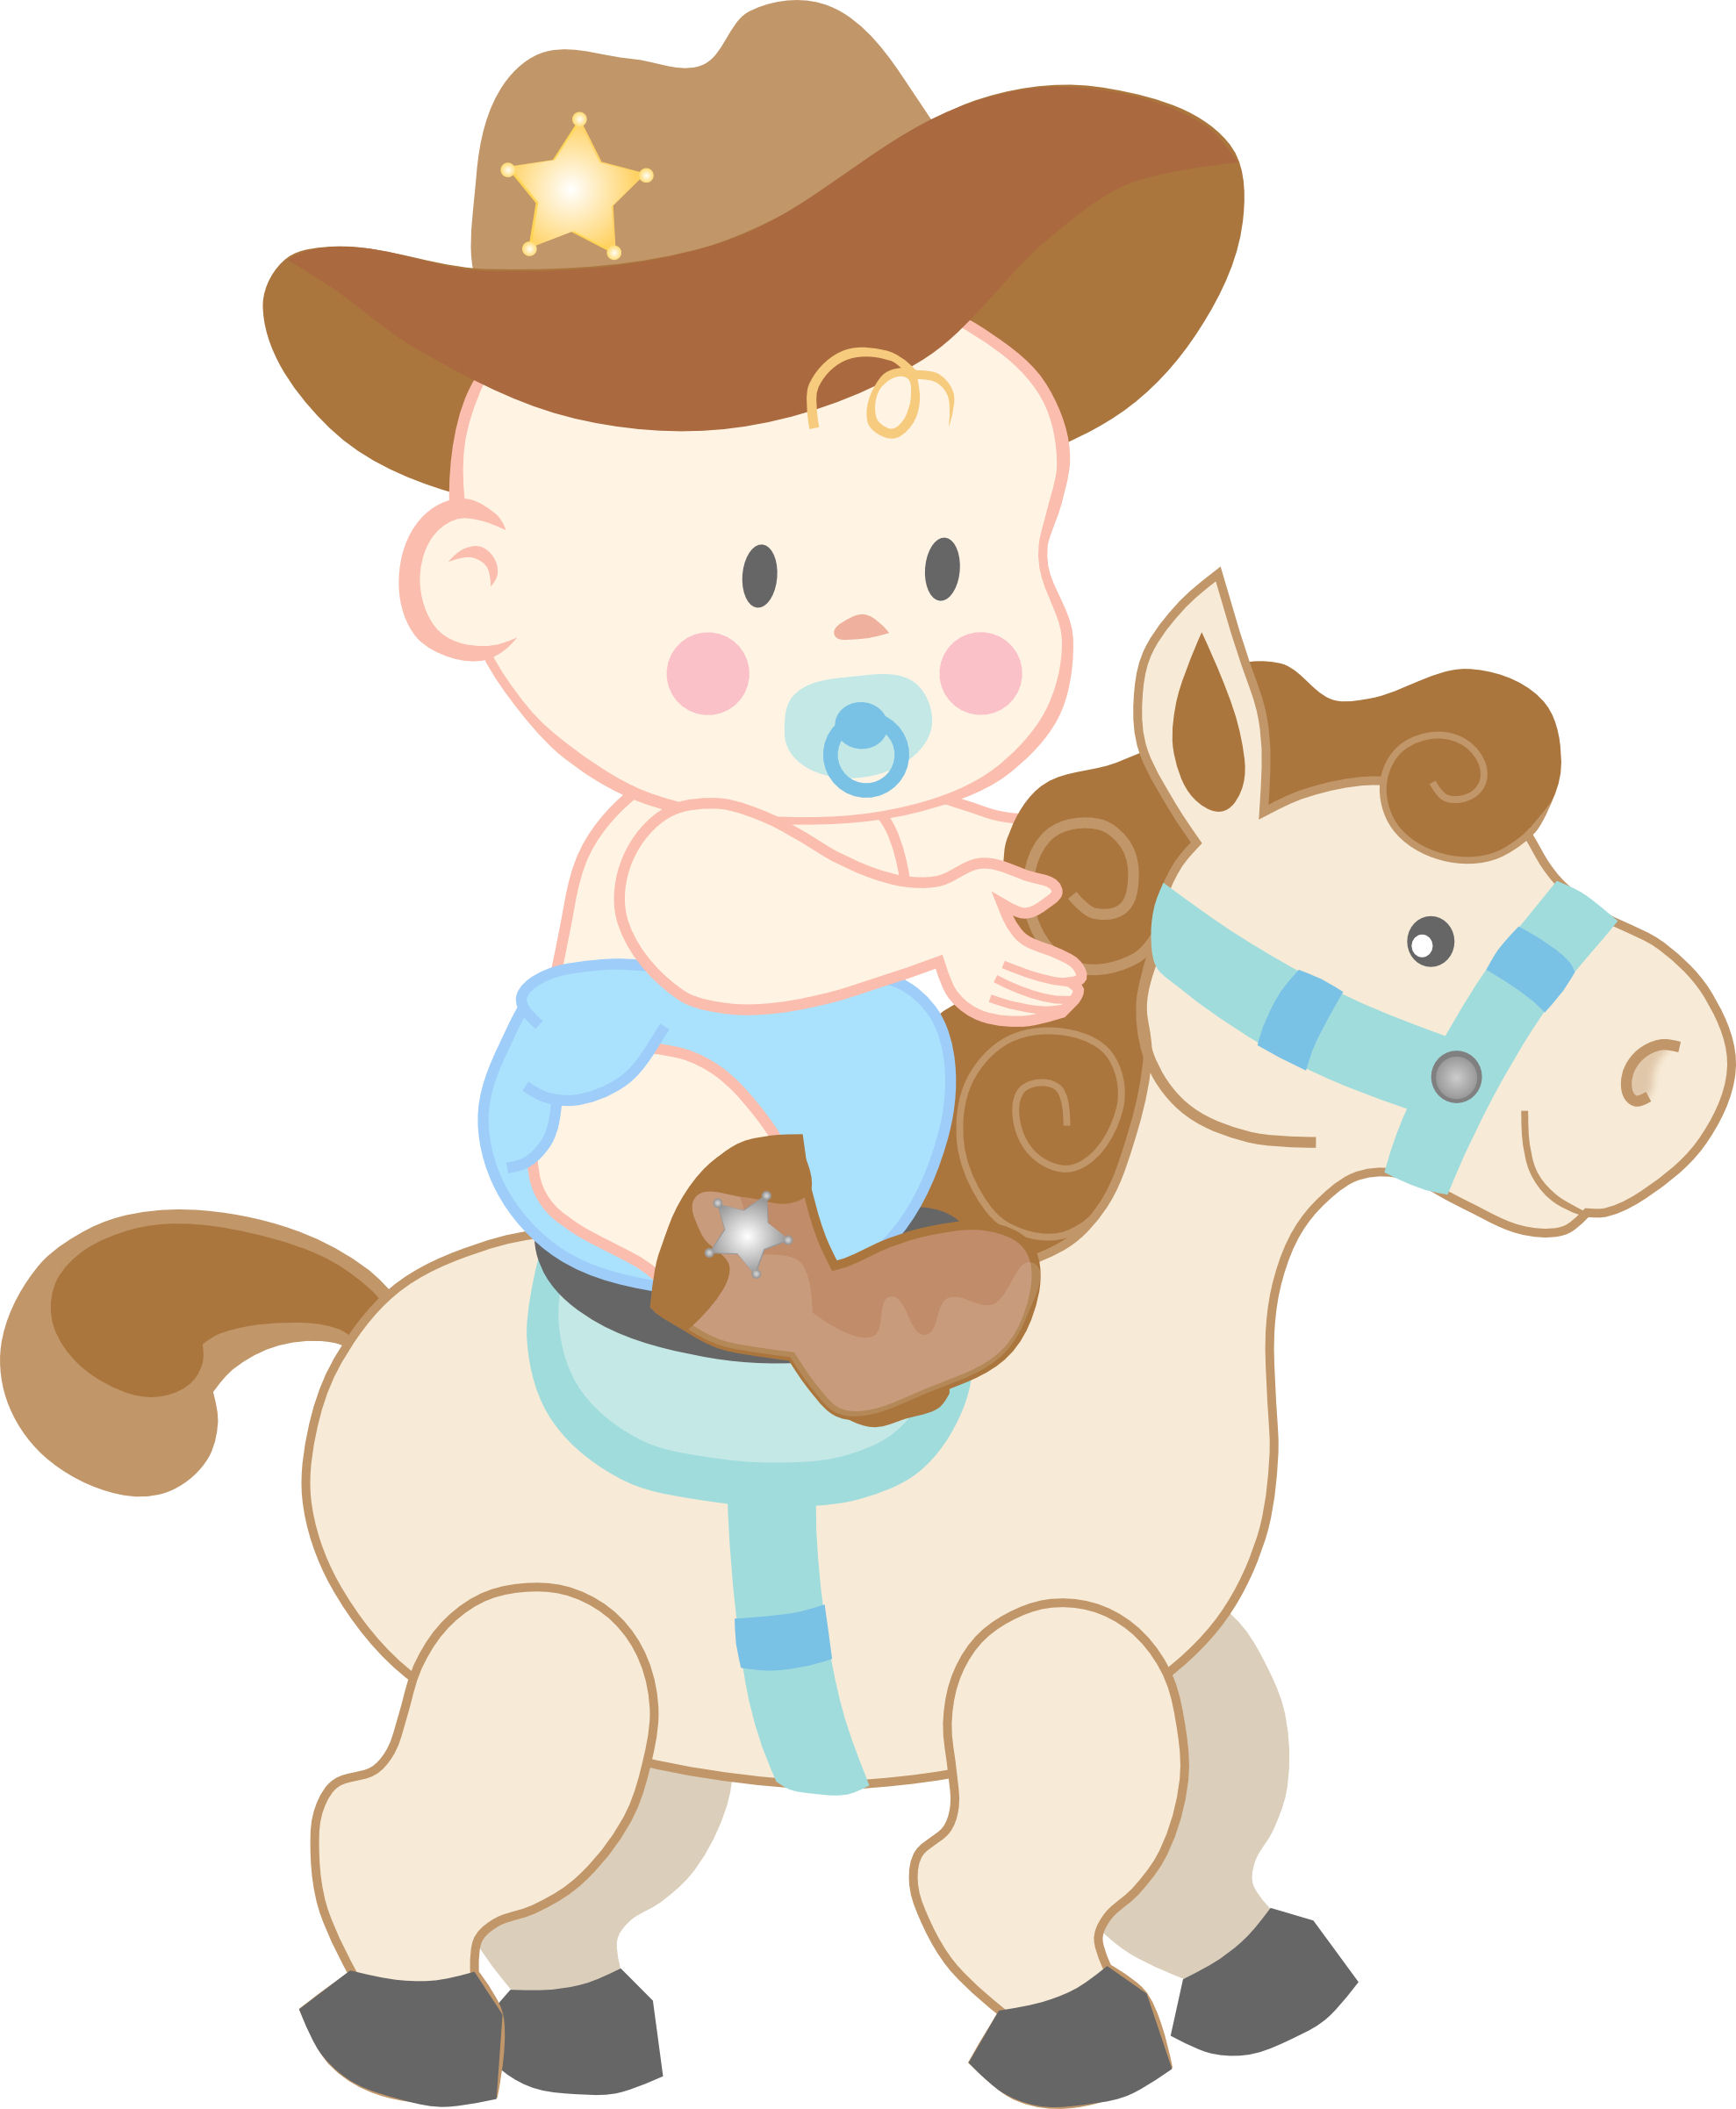 Baby Cowgirl Cartoon - Bing I